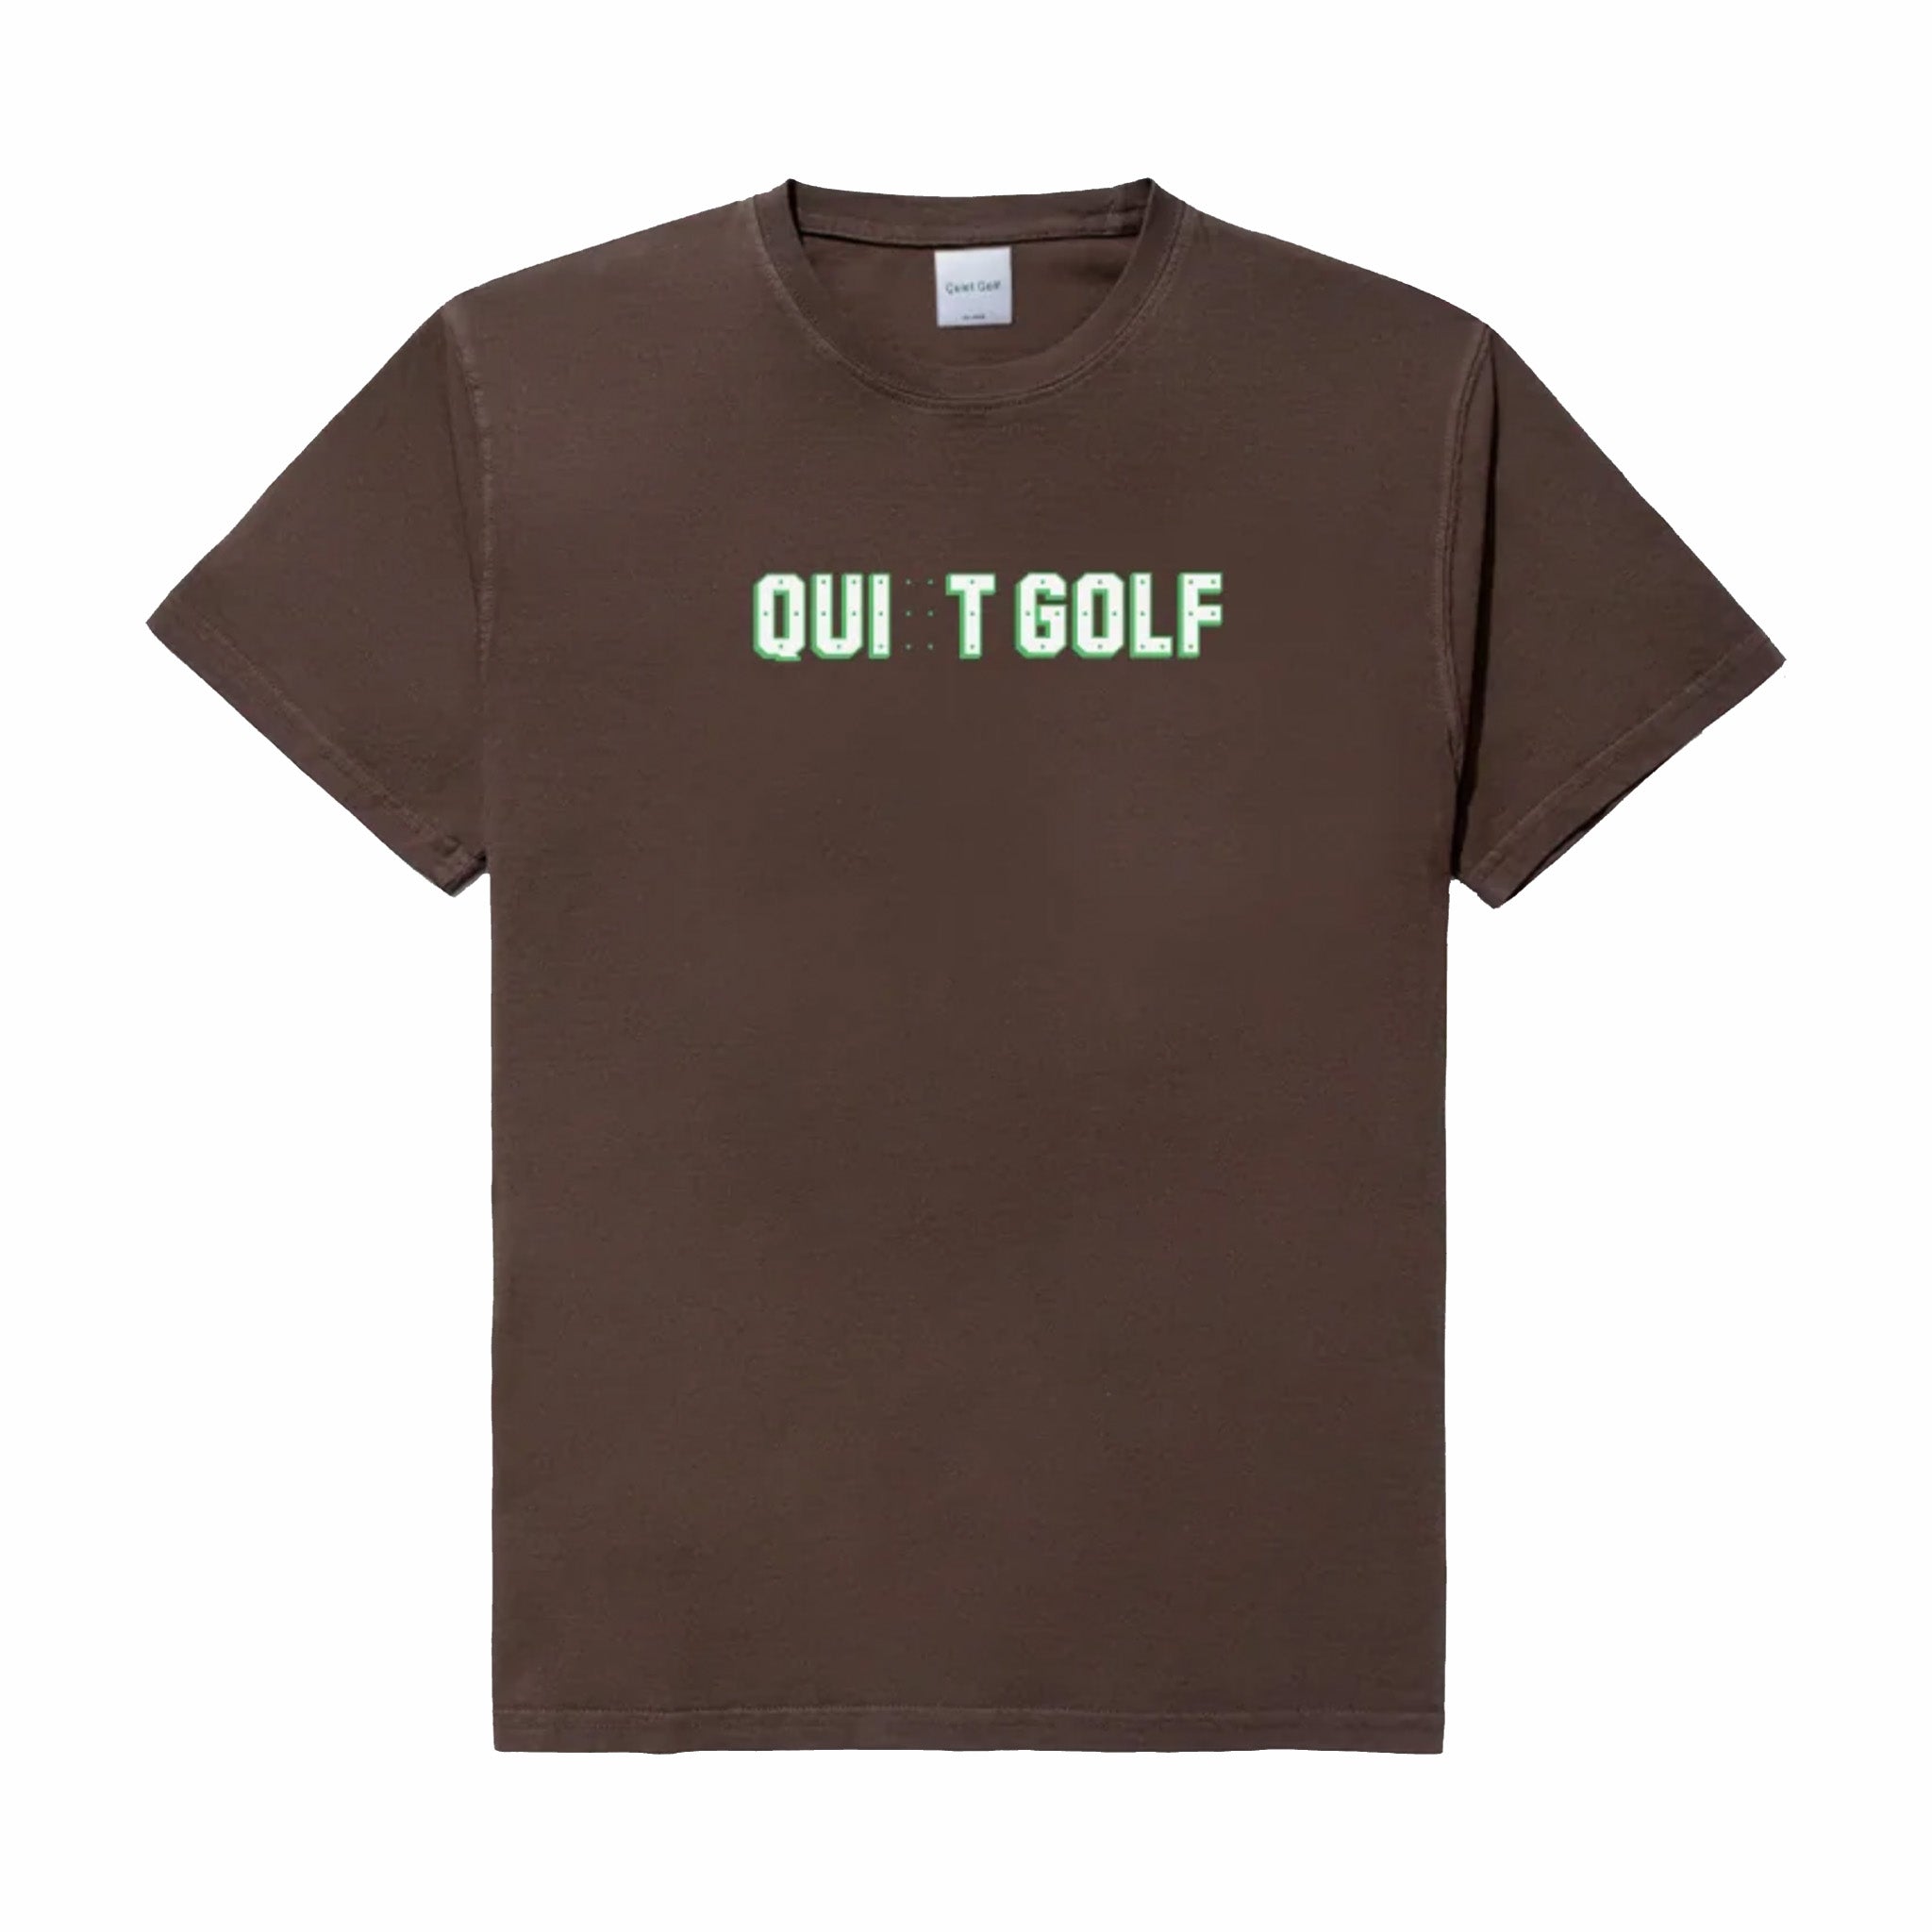 Golf tranquillo, Maglietta Quiet Golf Quit Golf (Marrone)